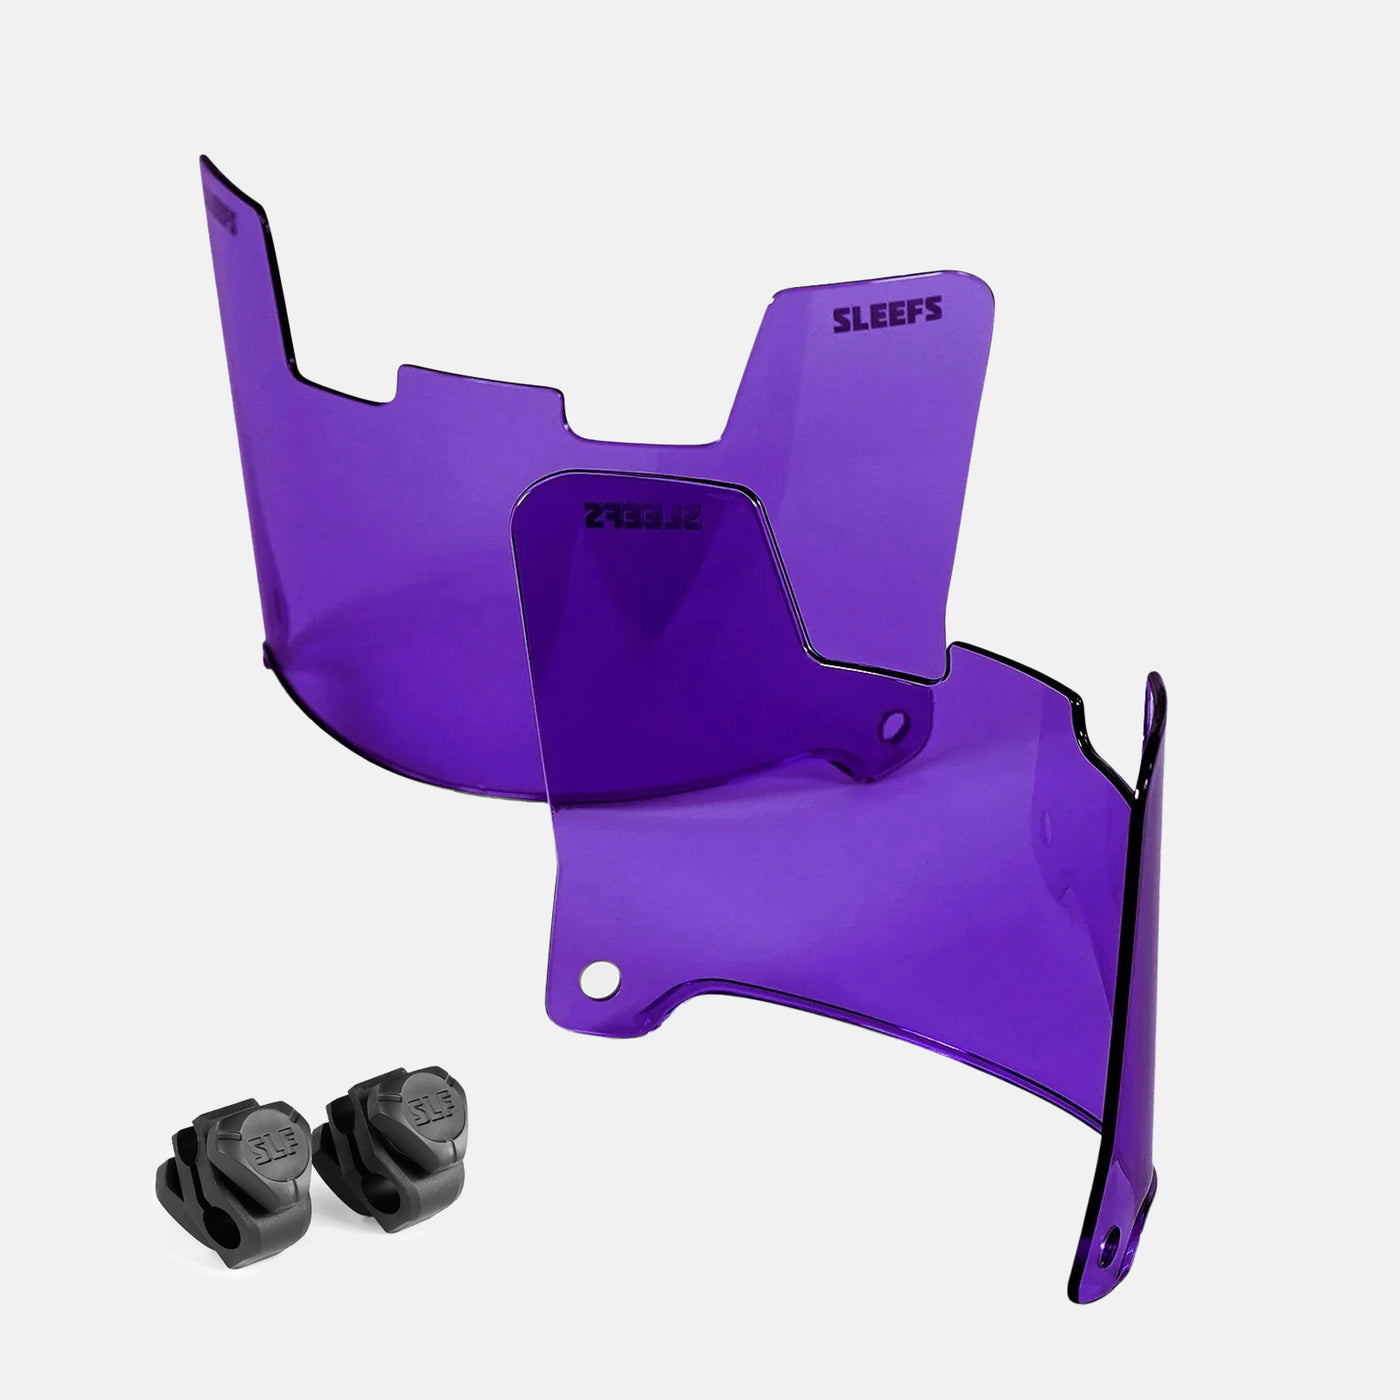 Hue Purple Helmet Eye-Shield Visor for Kids